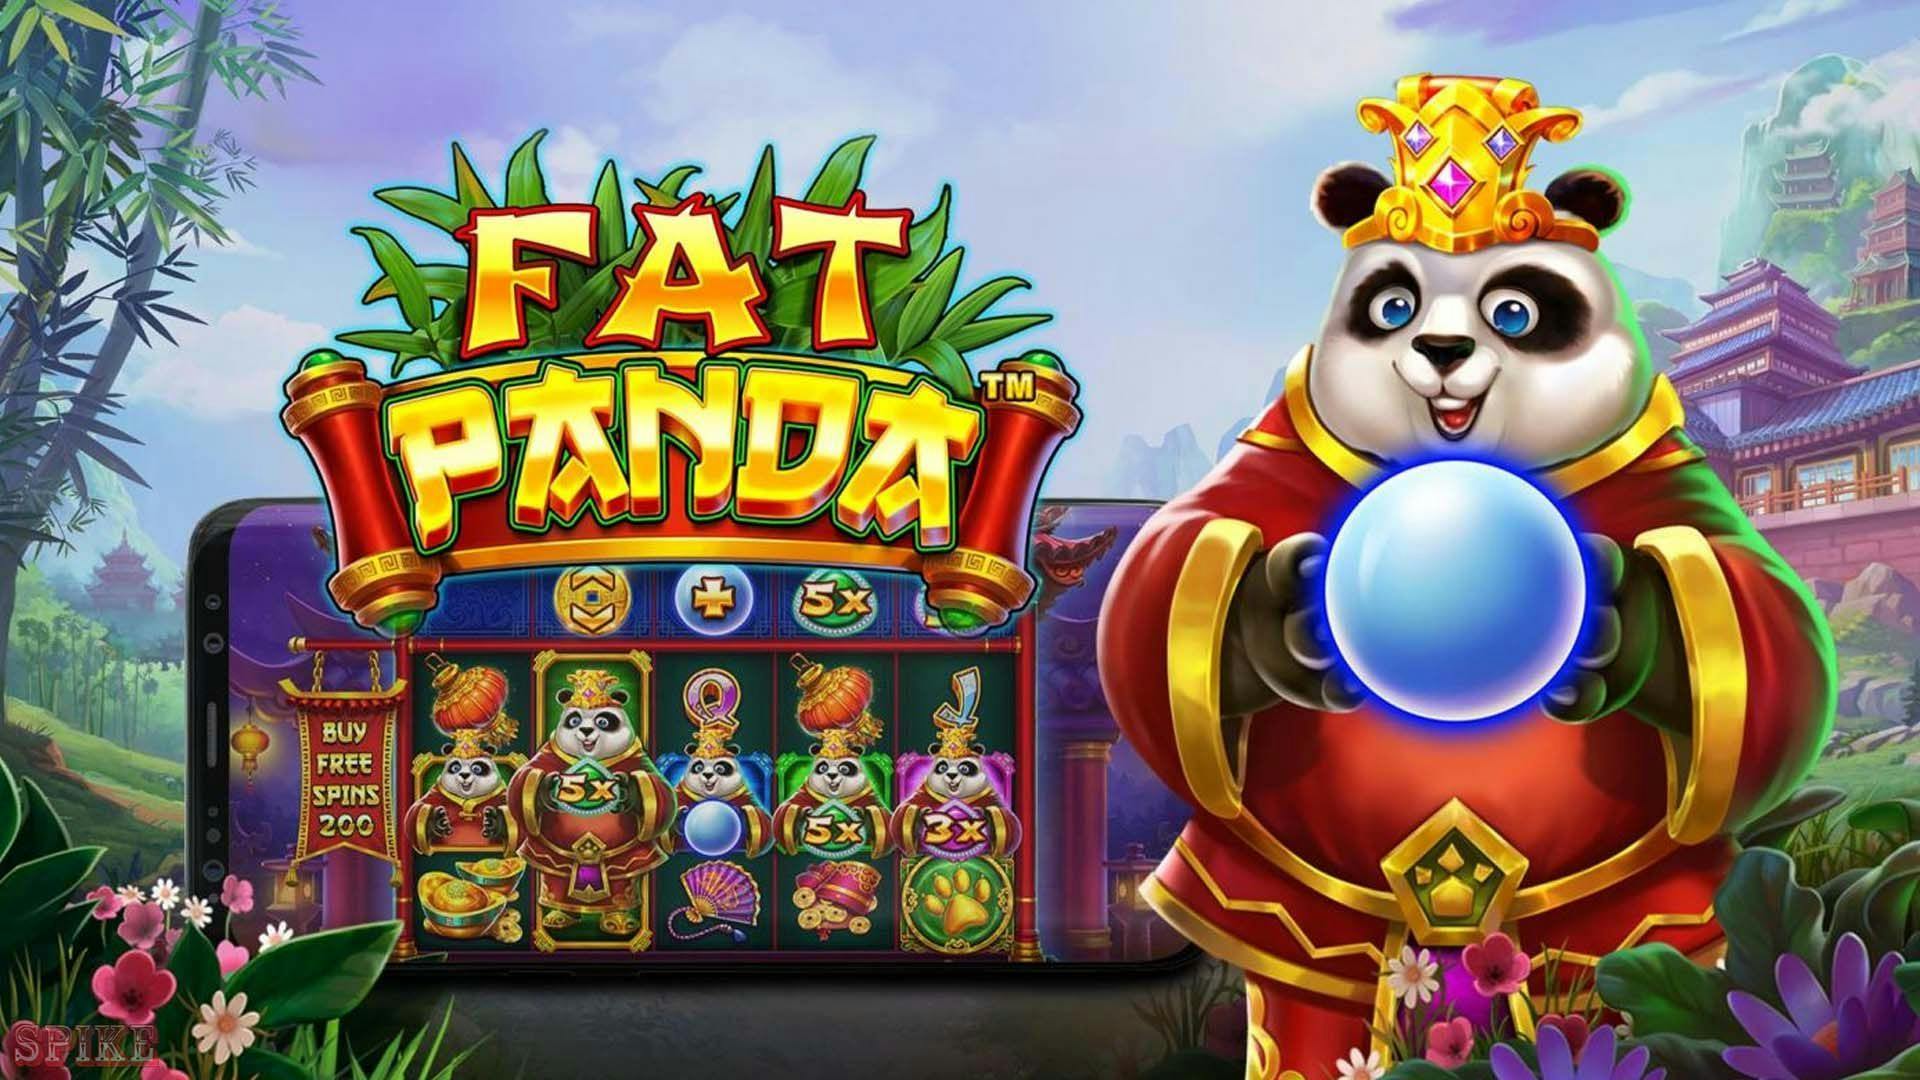 Fat Panda Slot Gratis